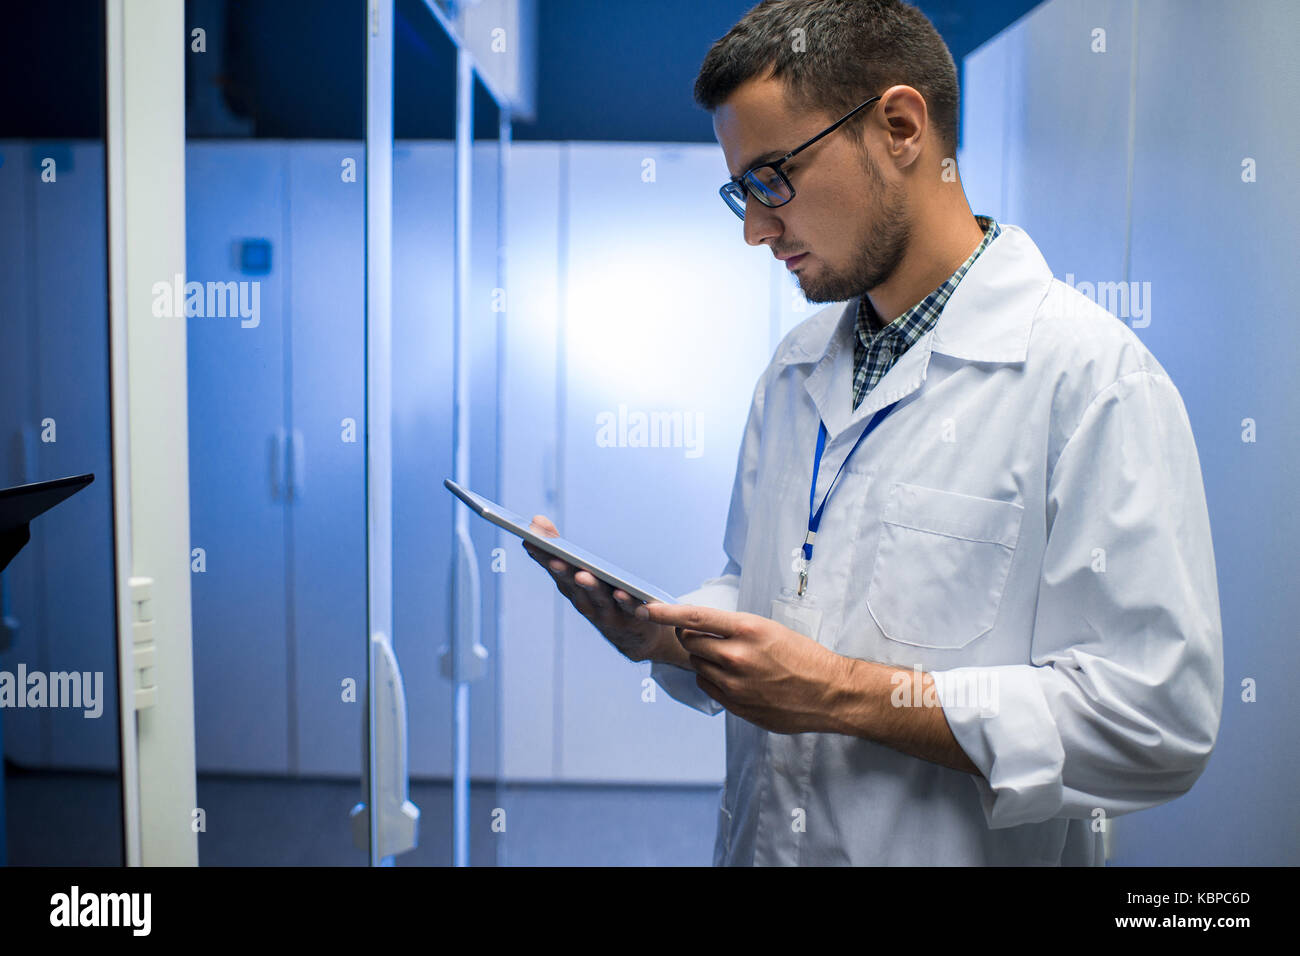 Vue de côté portrait de jeune ingénieur réseau looking at digital tablet debout entre les cabinets de serveurs dans le centre de recherches supercalculateur Banque D'Images